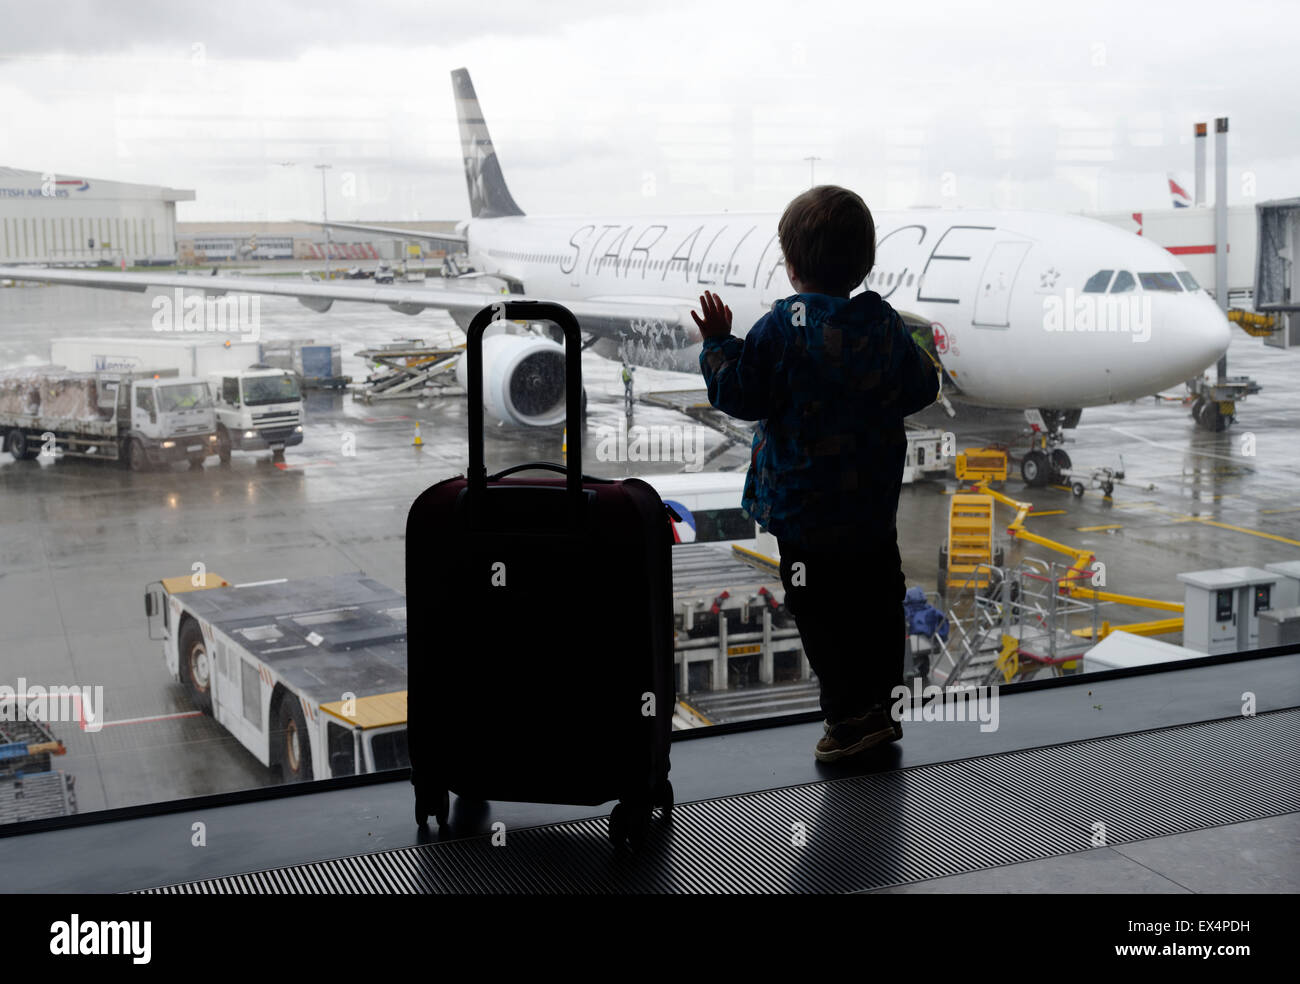 Un jeune garçon à la recherche d'une fenêtre de l'aéroport à l'avion Banque D'Images